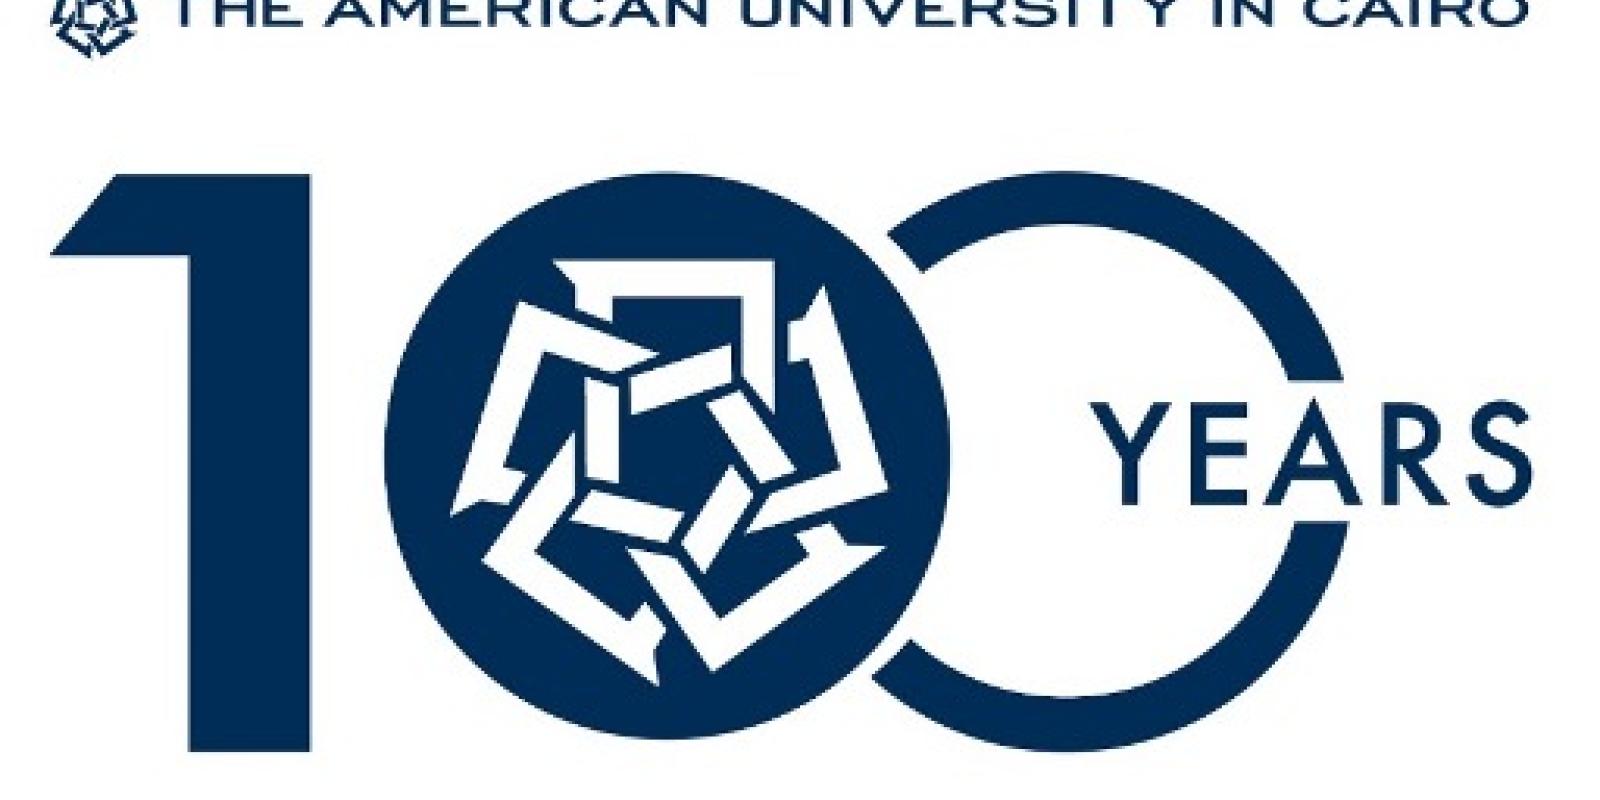 Winning logo for AUC's upcoming centennial